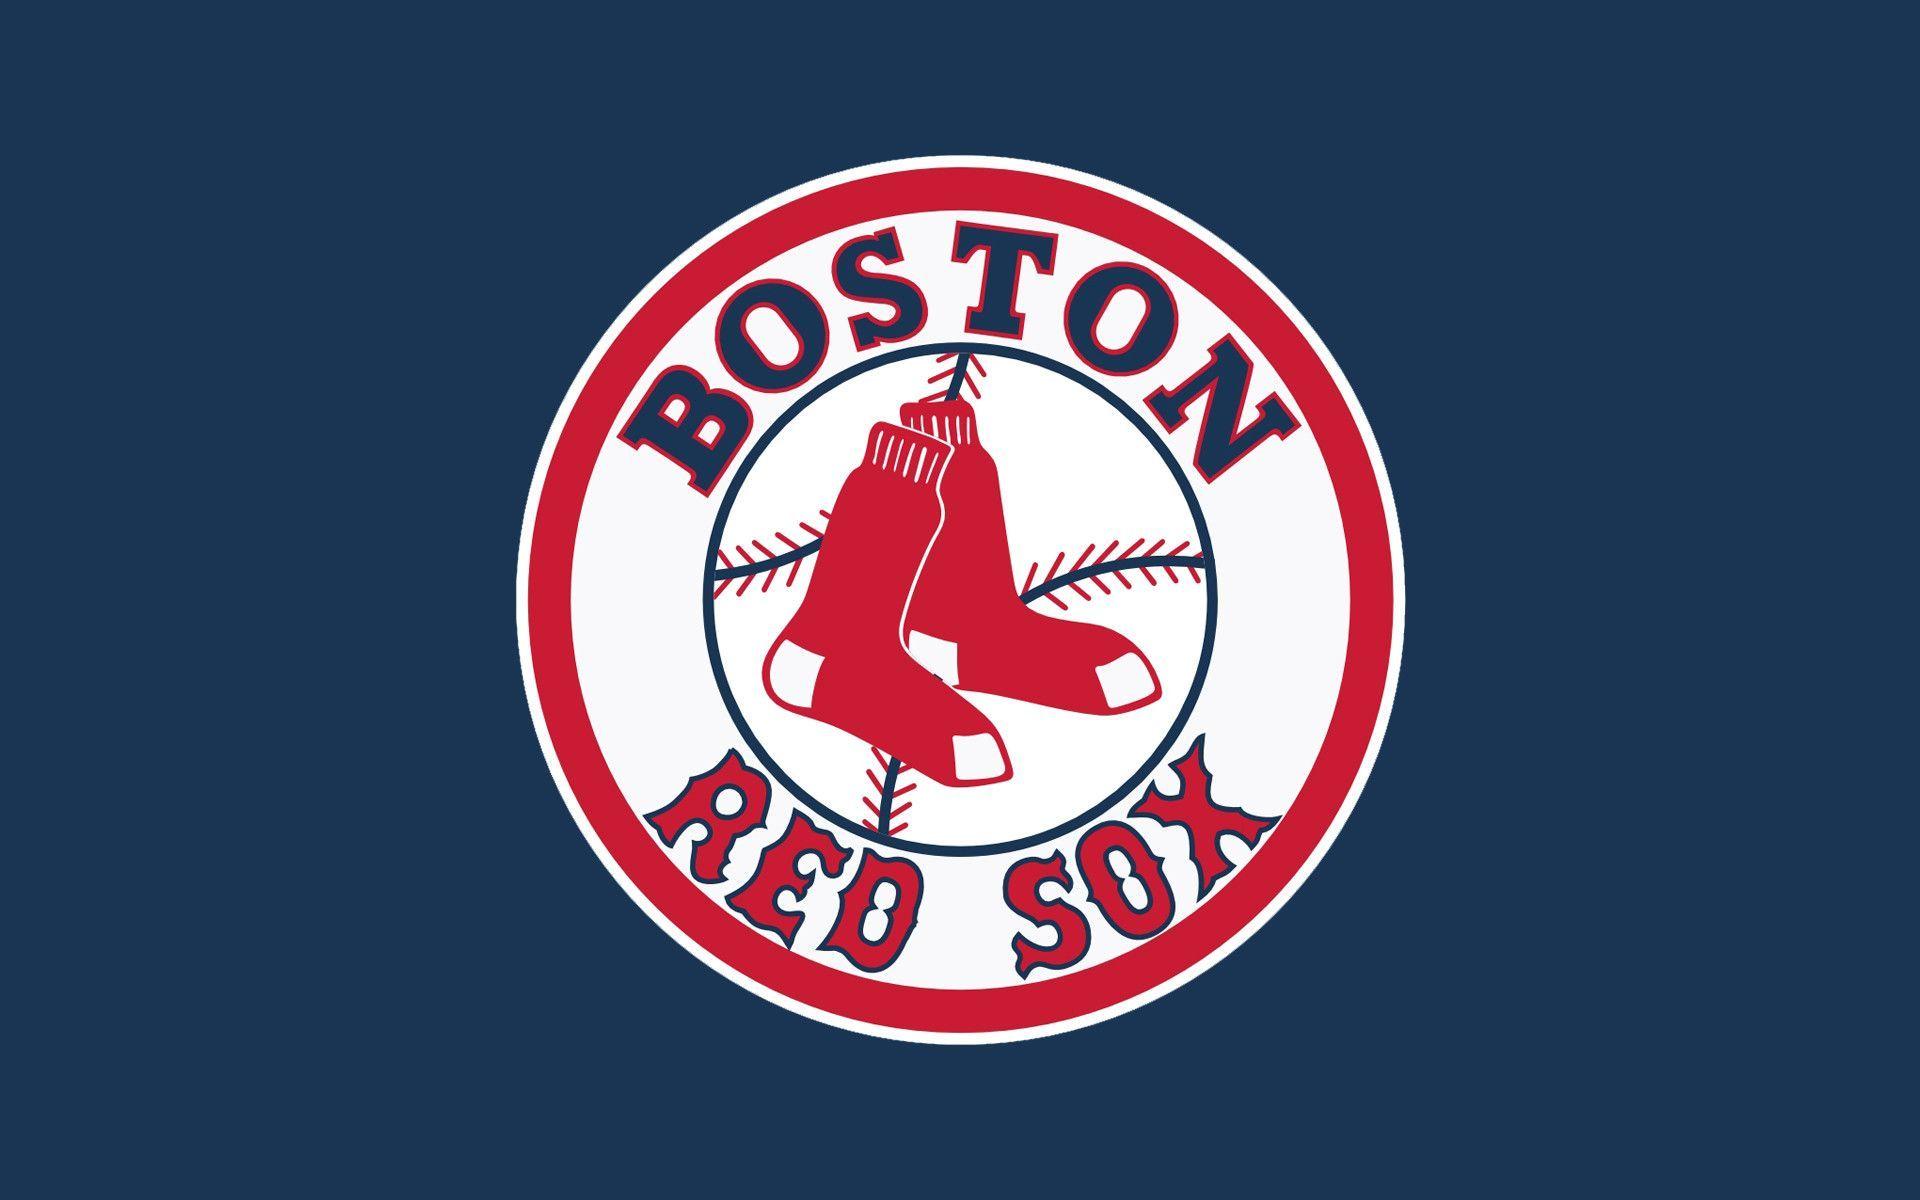 Boston Red Sox Wallpaper HD wallpaper search